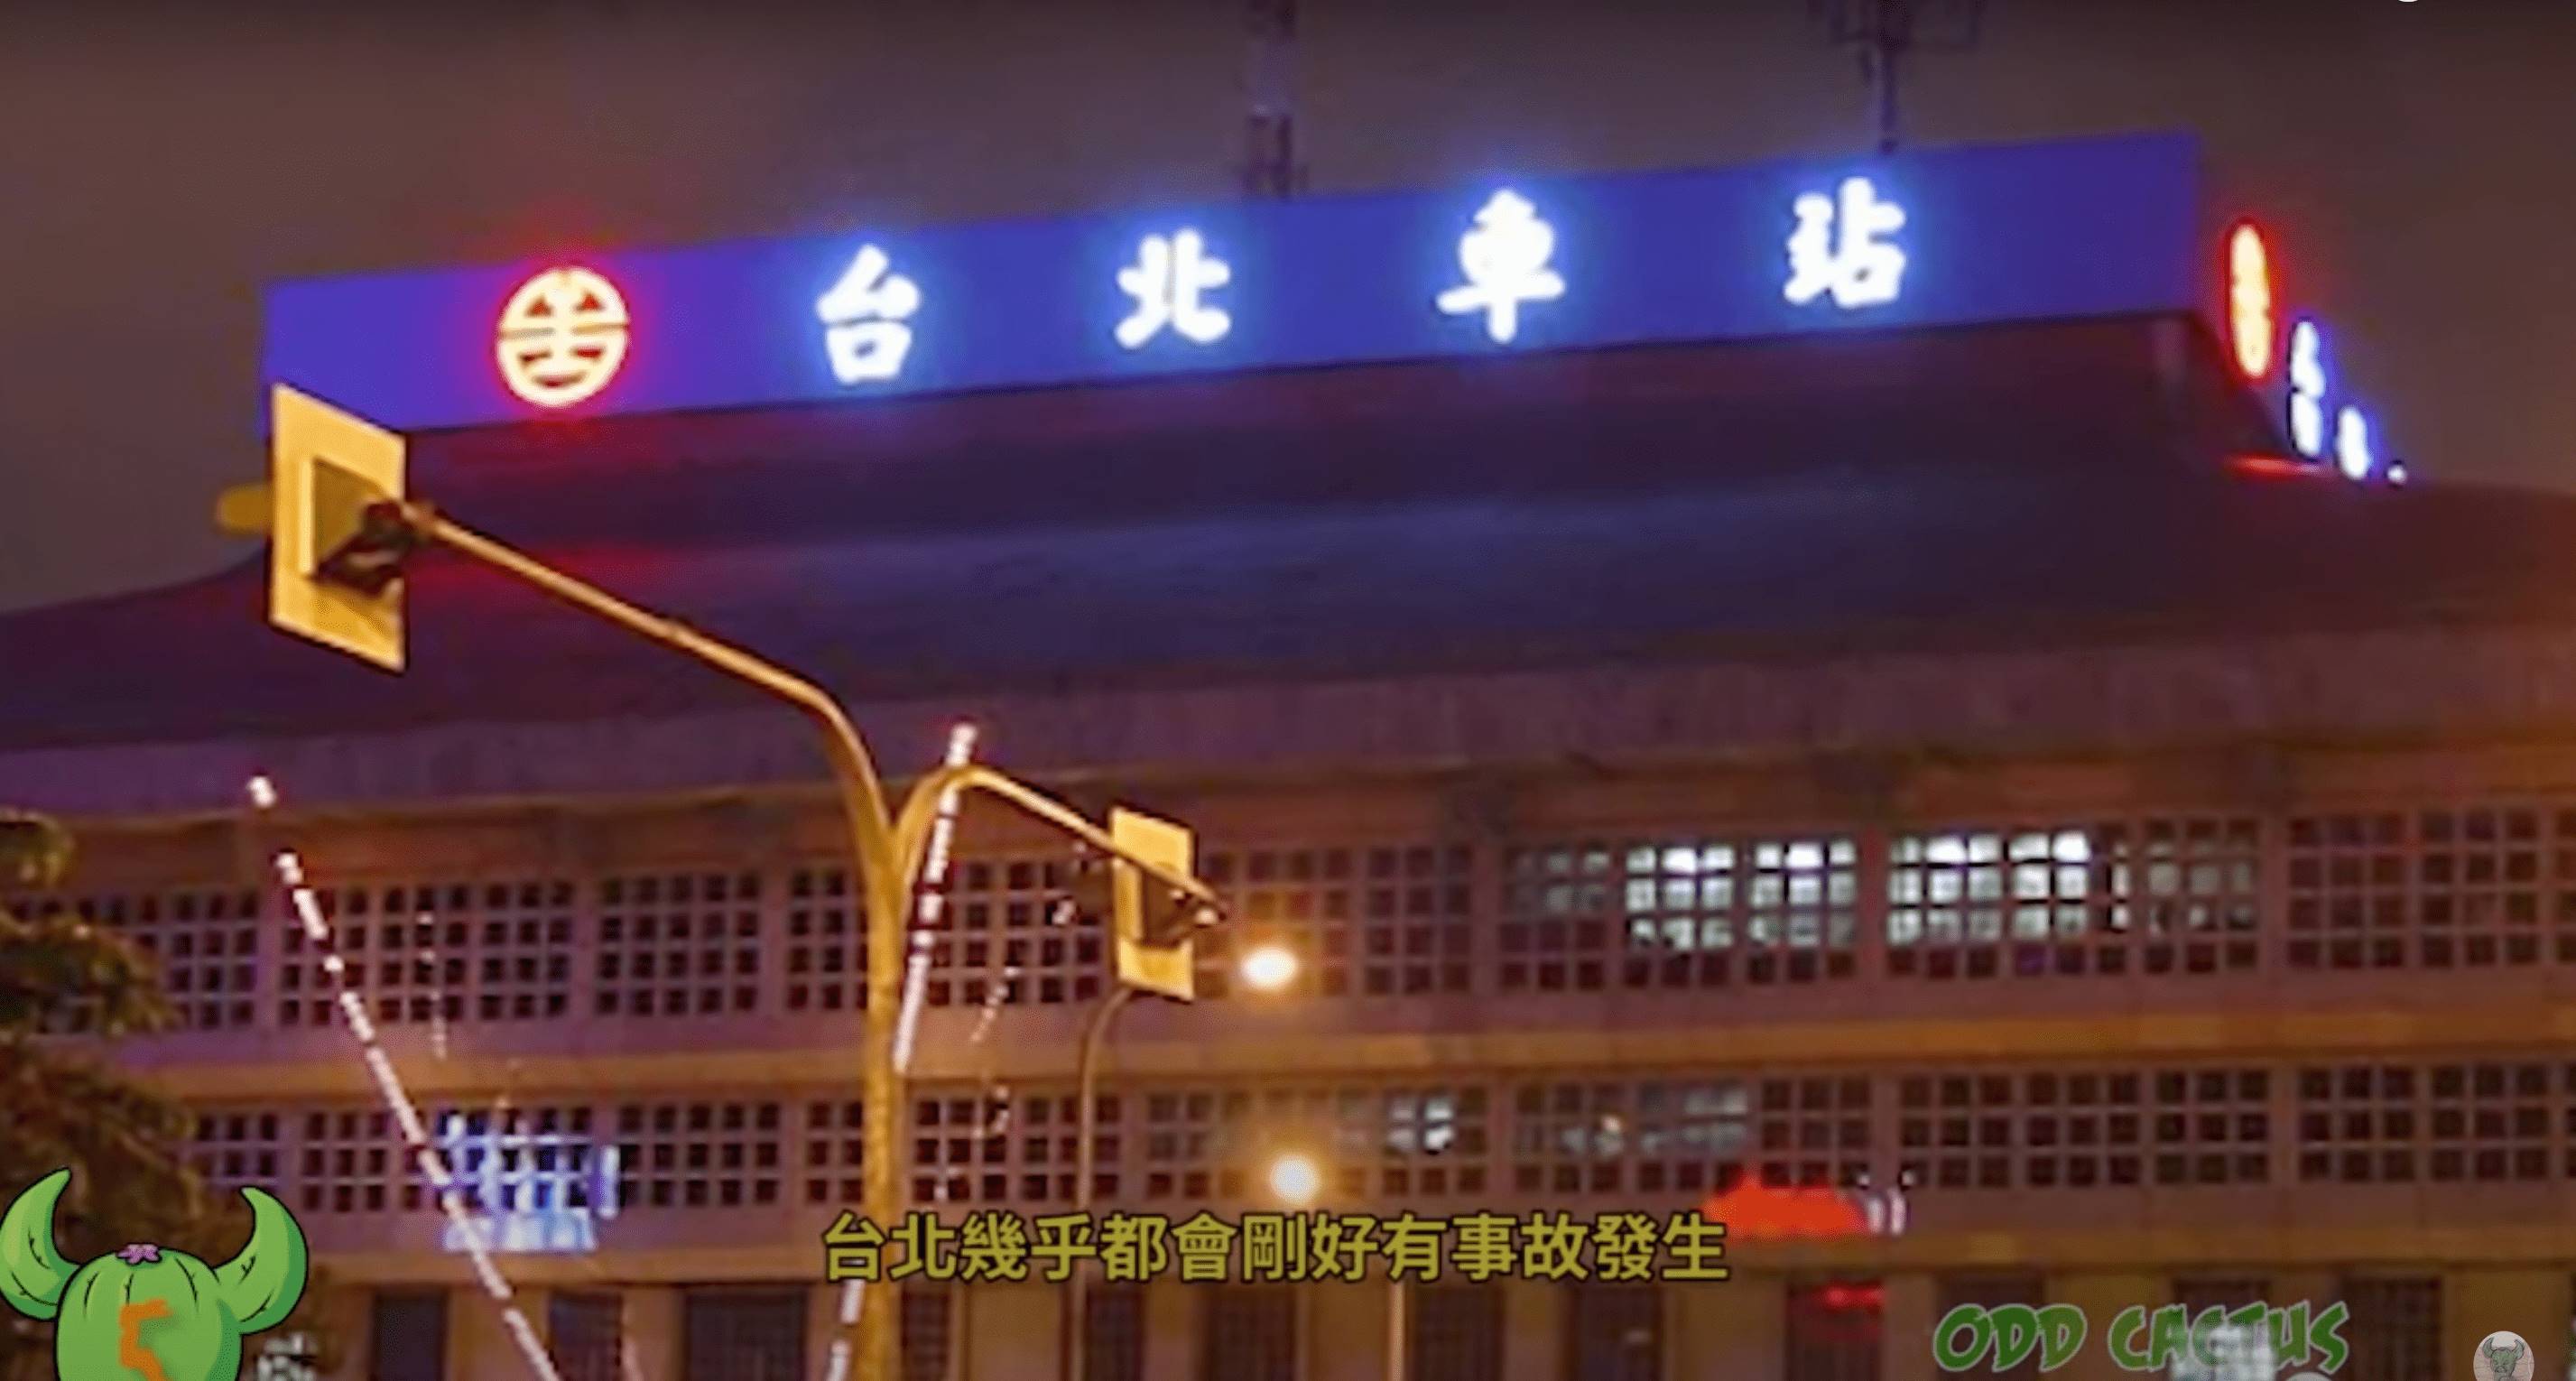 台北車站招牌有字沒有亮燈就會出事